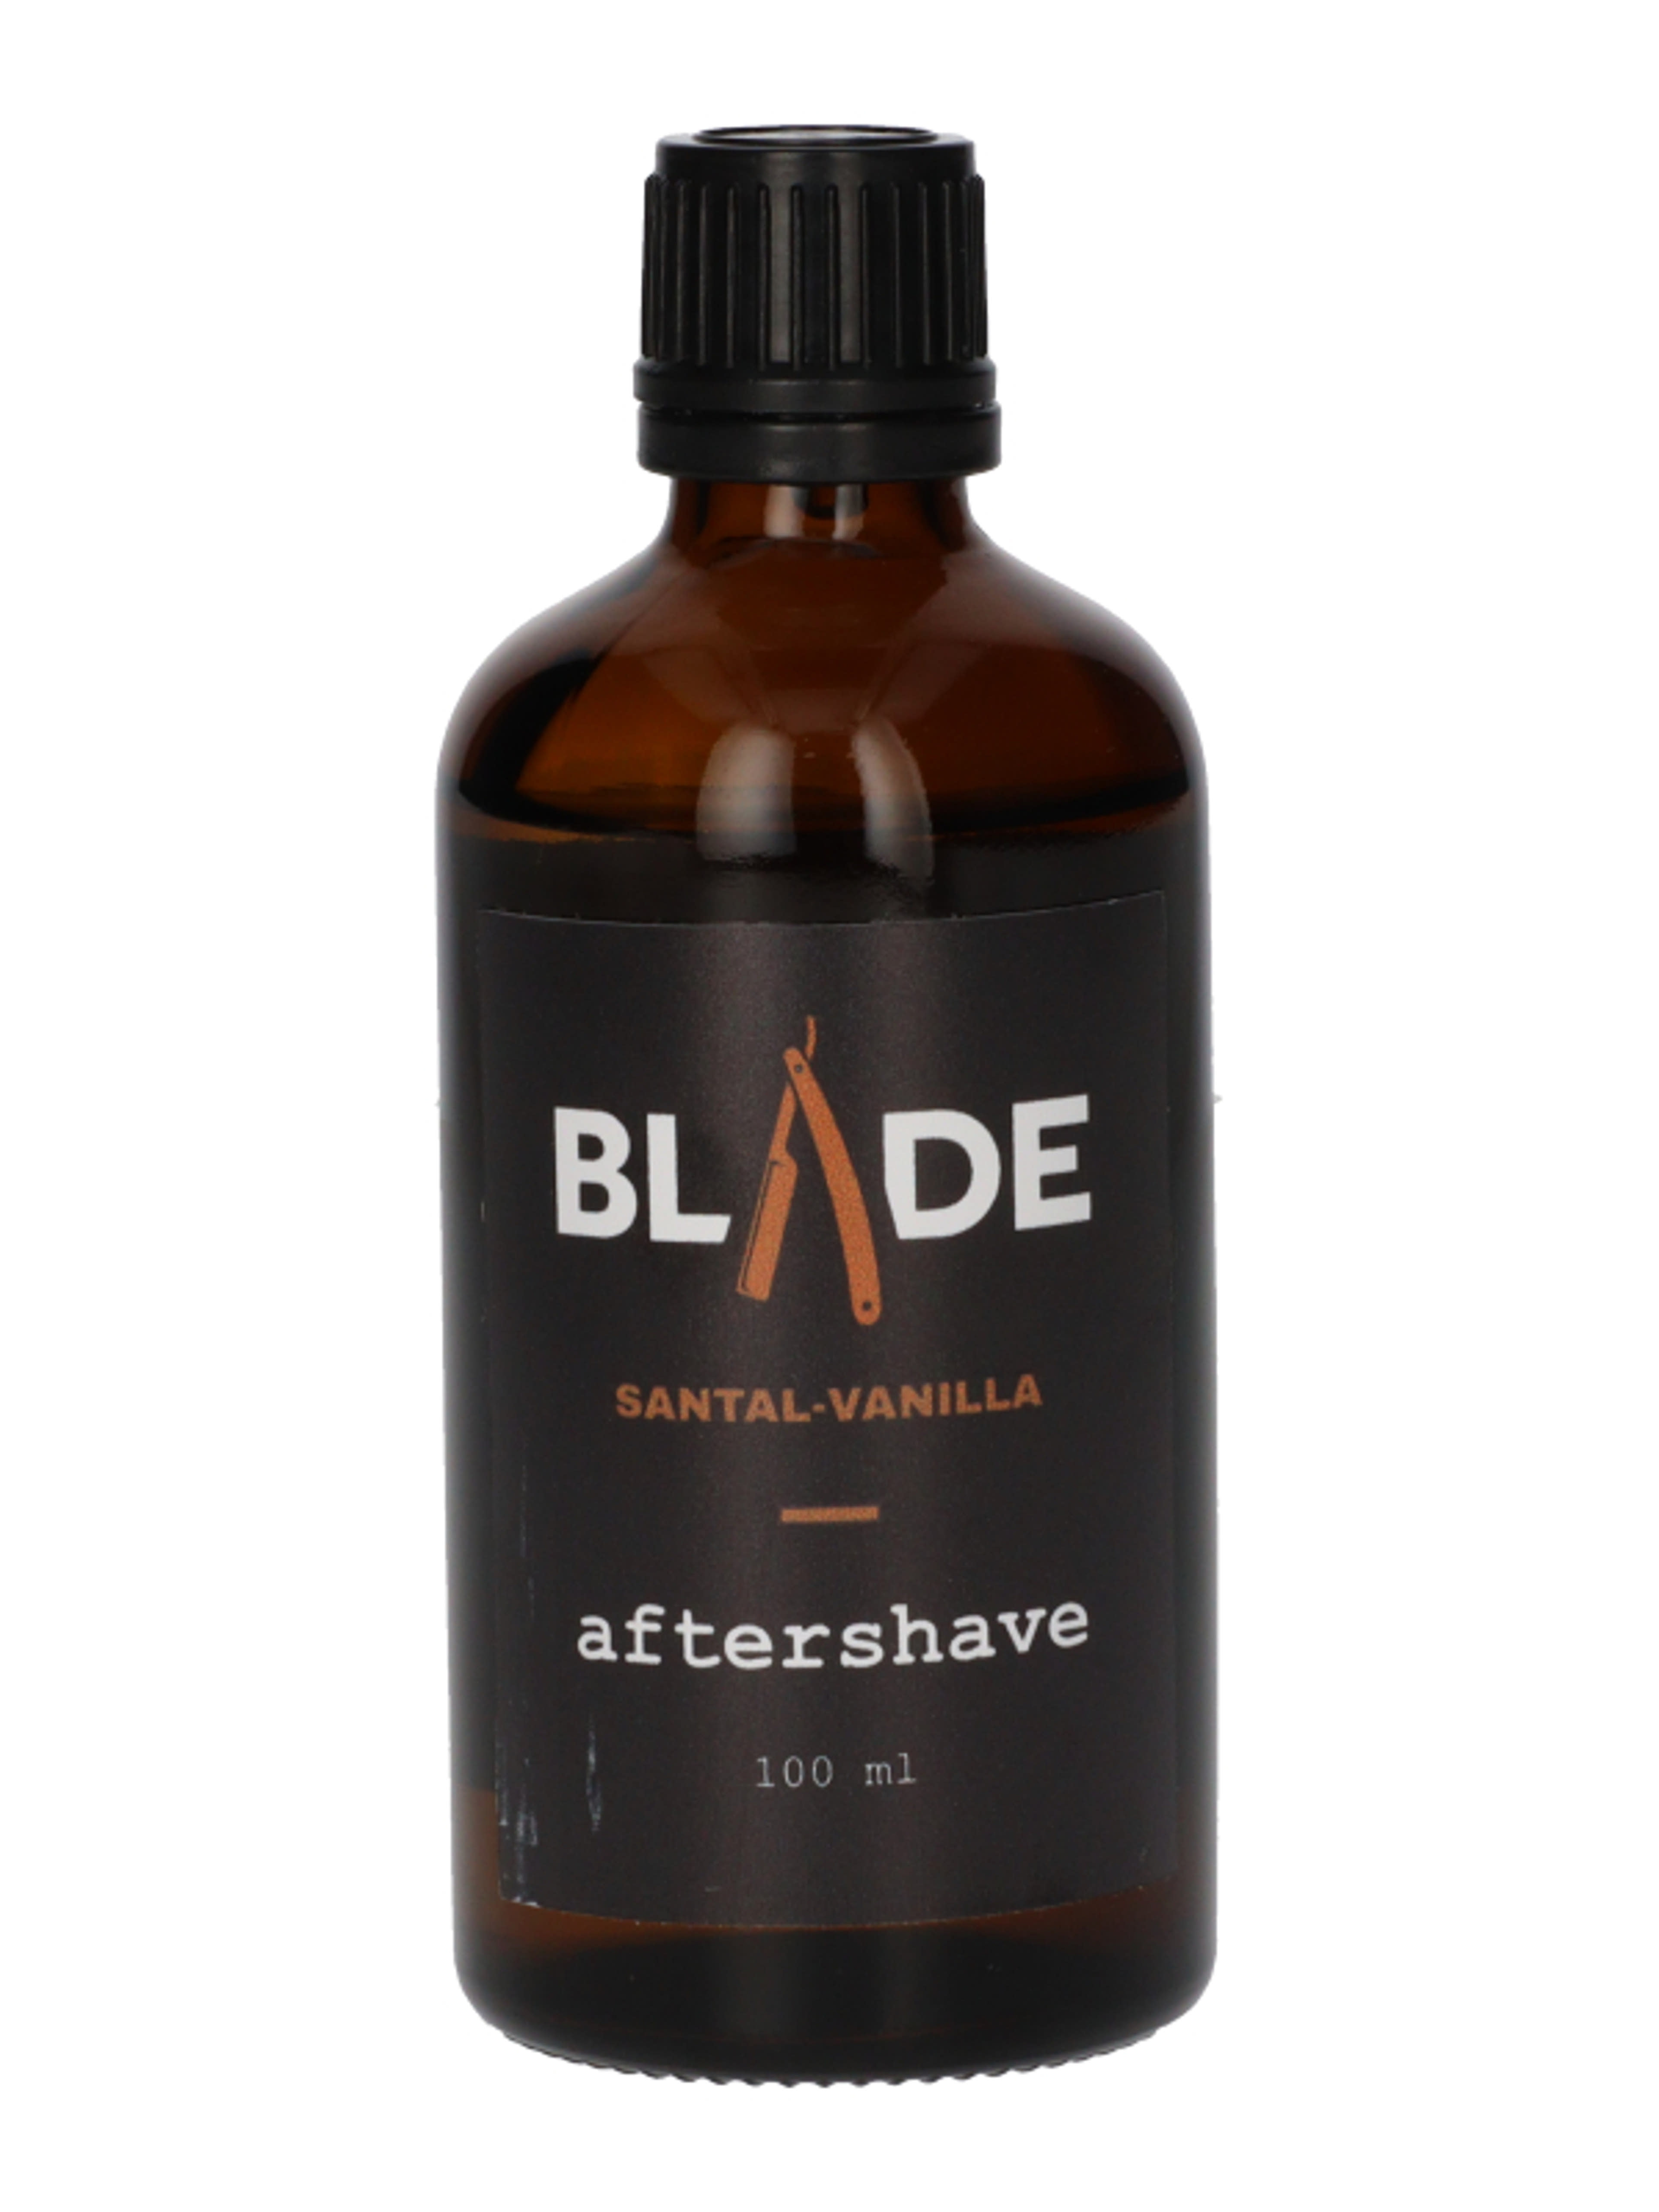 Blade after shave szantál-vanília - 100 ml-1